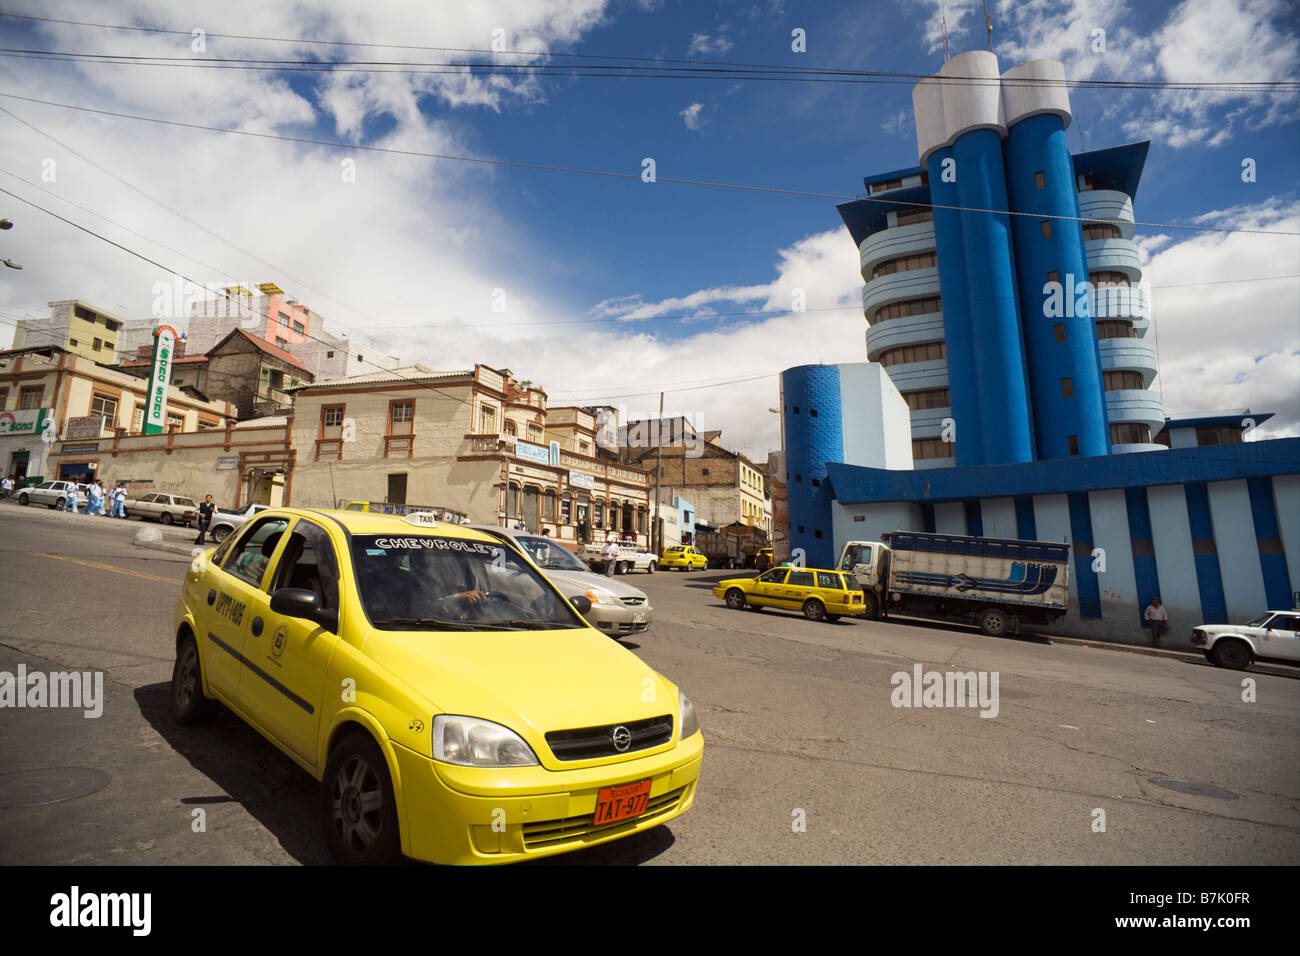 L'ubiqitous taxi jaune de l'Équateur dans les rues d'Ambato Banque D'Images